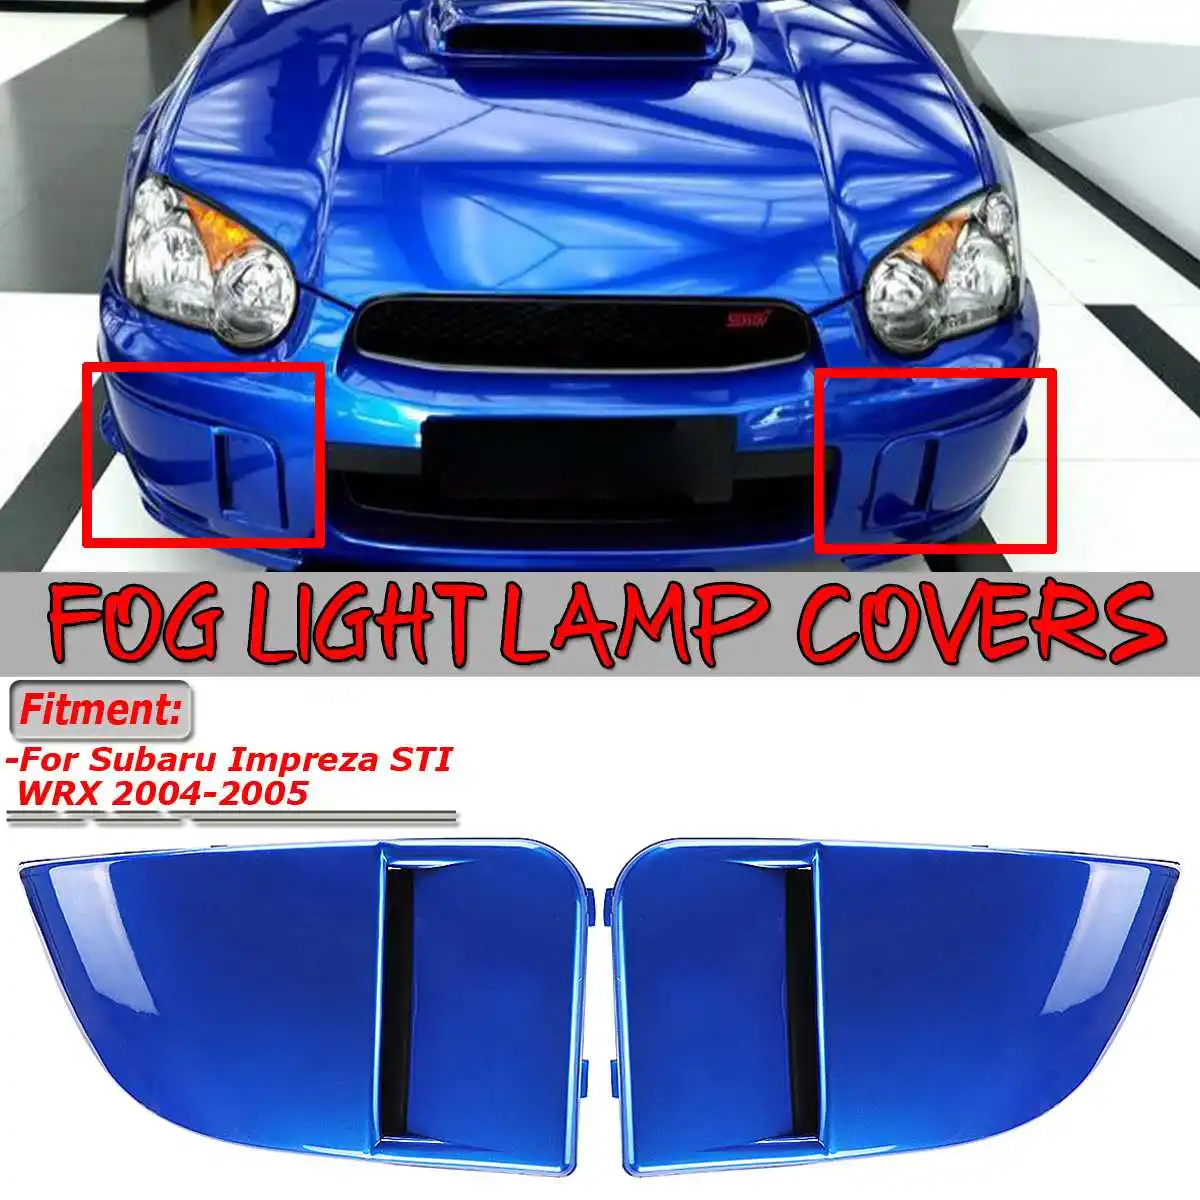 Высокое качество 2 шт./компл. автомобиля передние противотуманные фары светильник абажур для лампы с металлическим каркаксом отделка защита лампы МАСКА КРЫШКА ДЛЯ Subaru, автомобильные аксессуары, брелок для автомобиля Subaru WRX STI 2004 2005 - Цвет: Синий